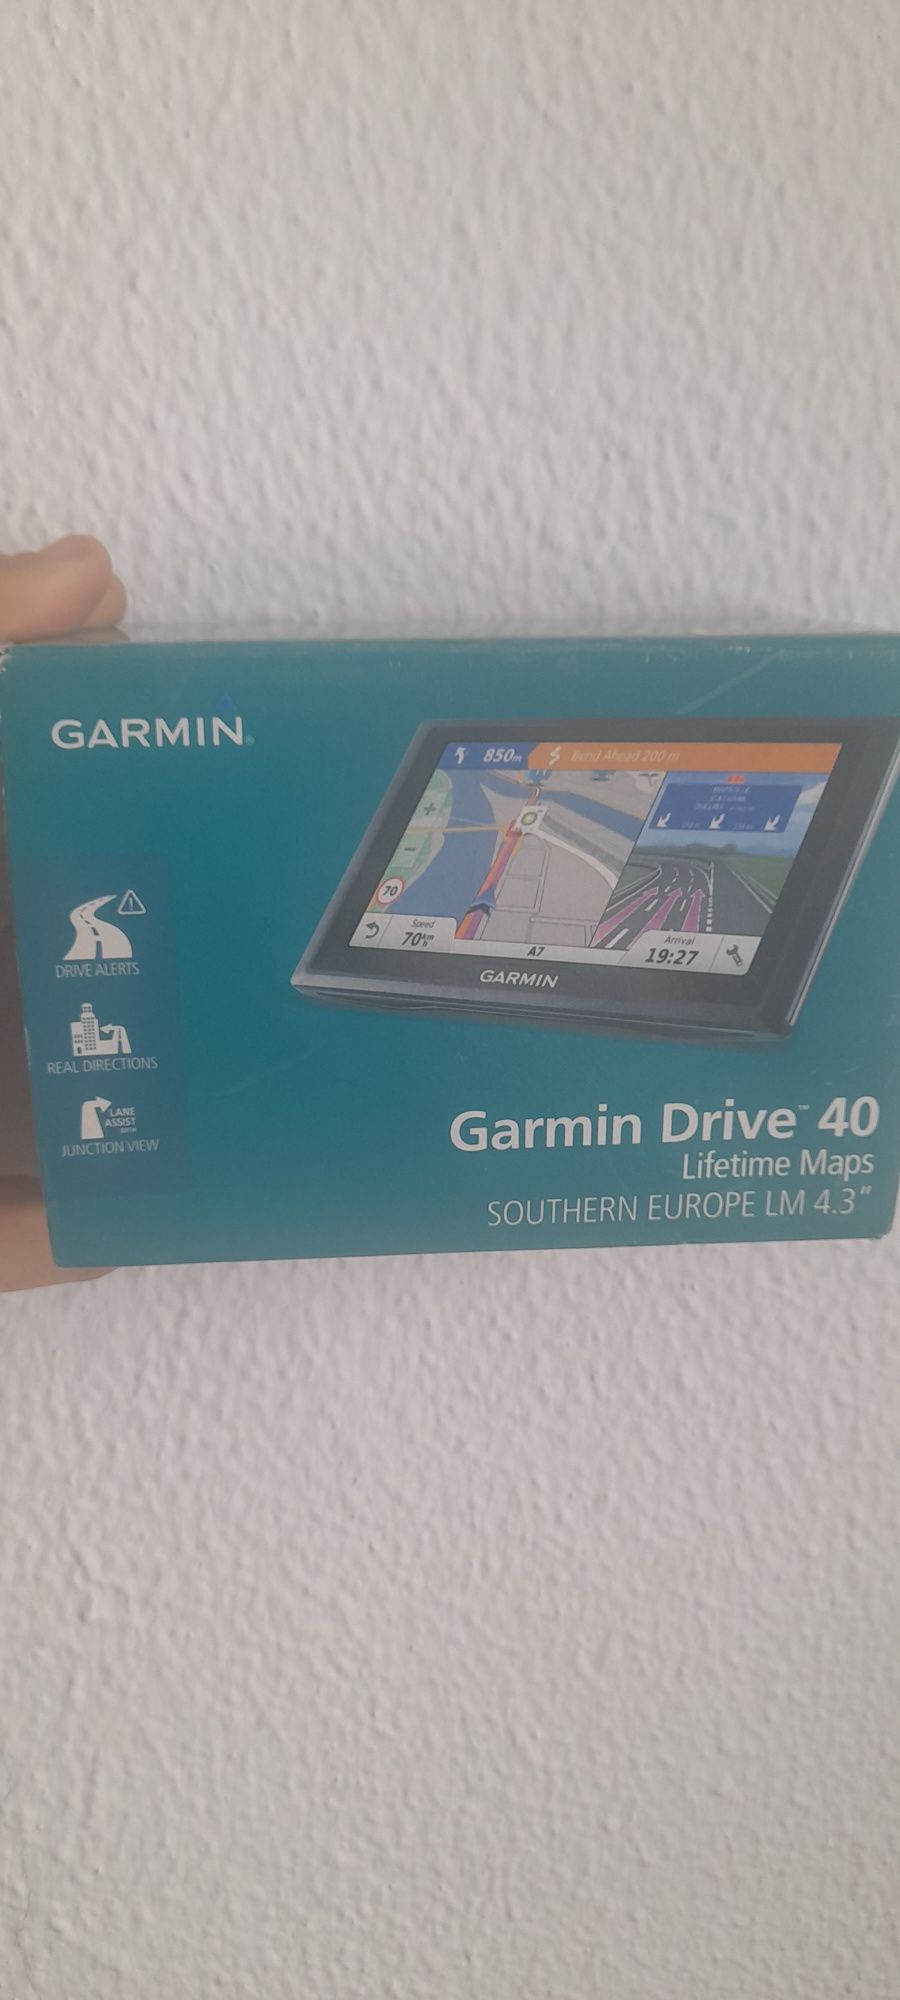 GPS GARMIN DRIVE 40 4.3"